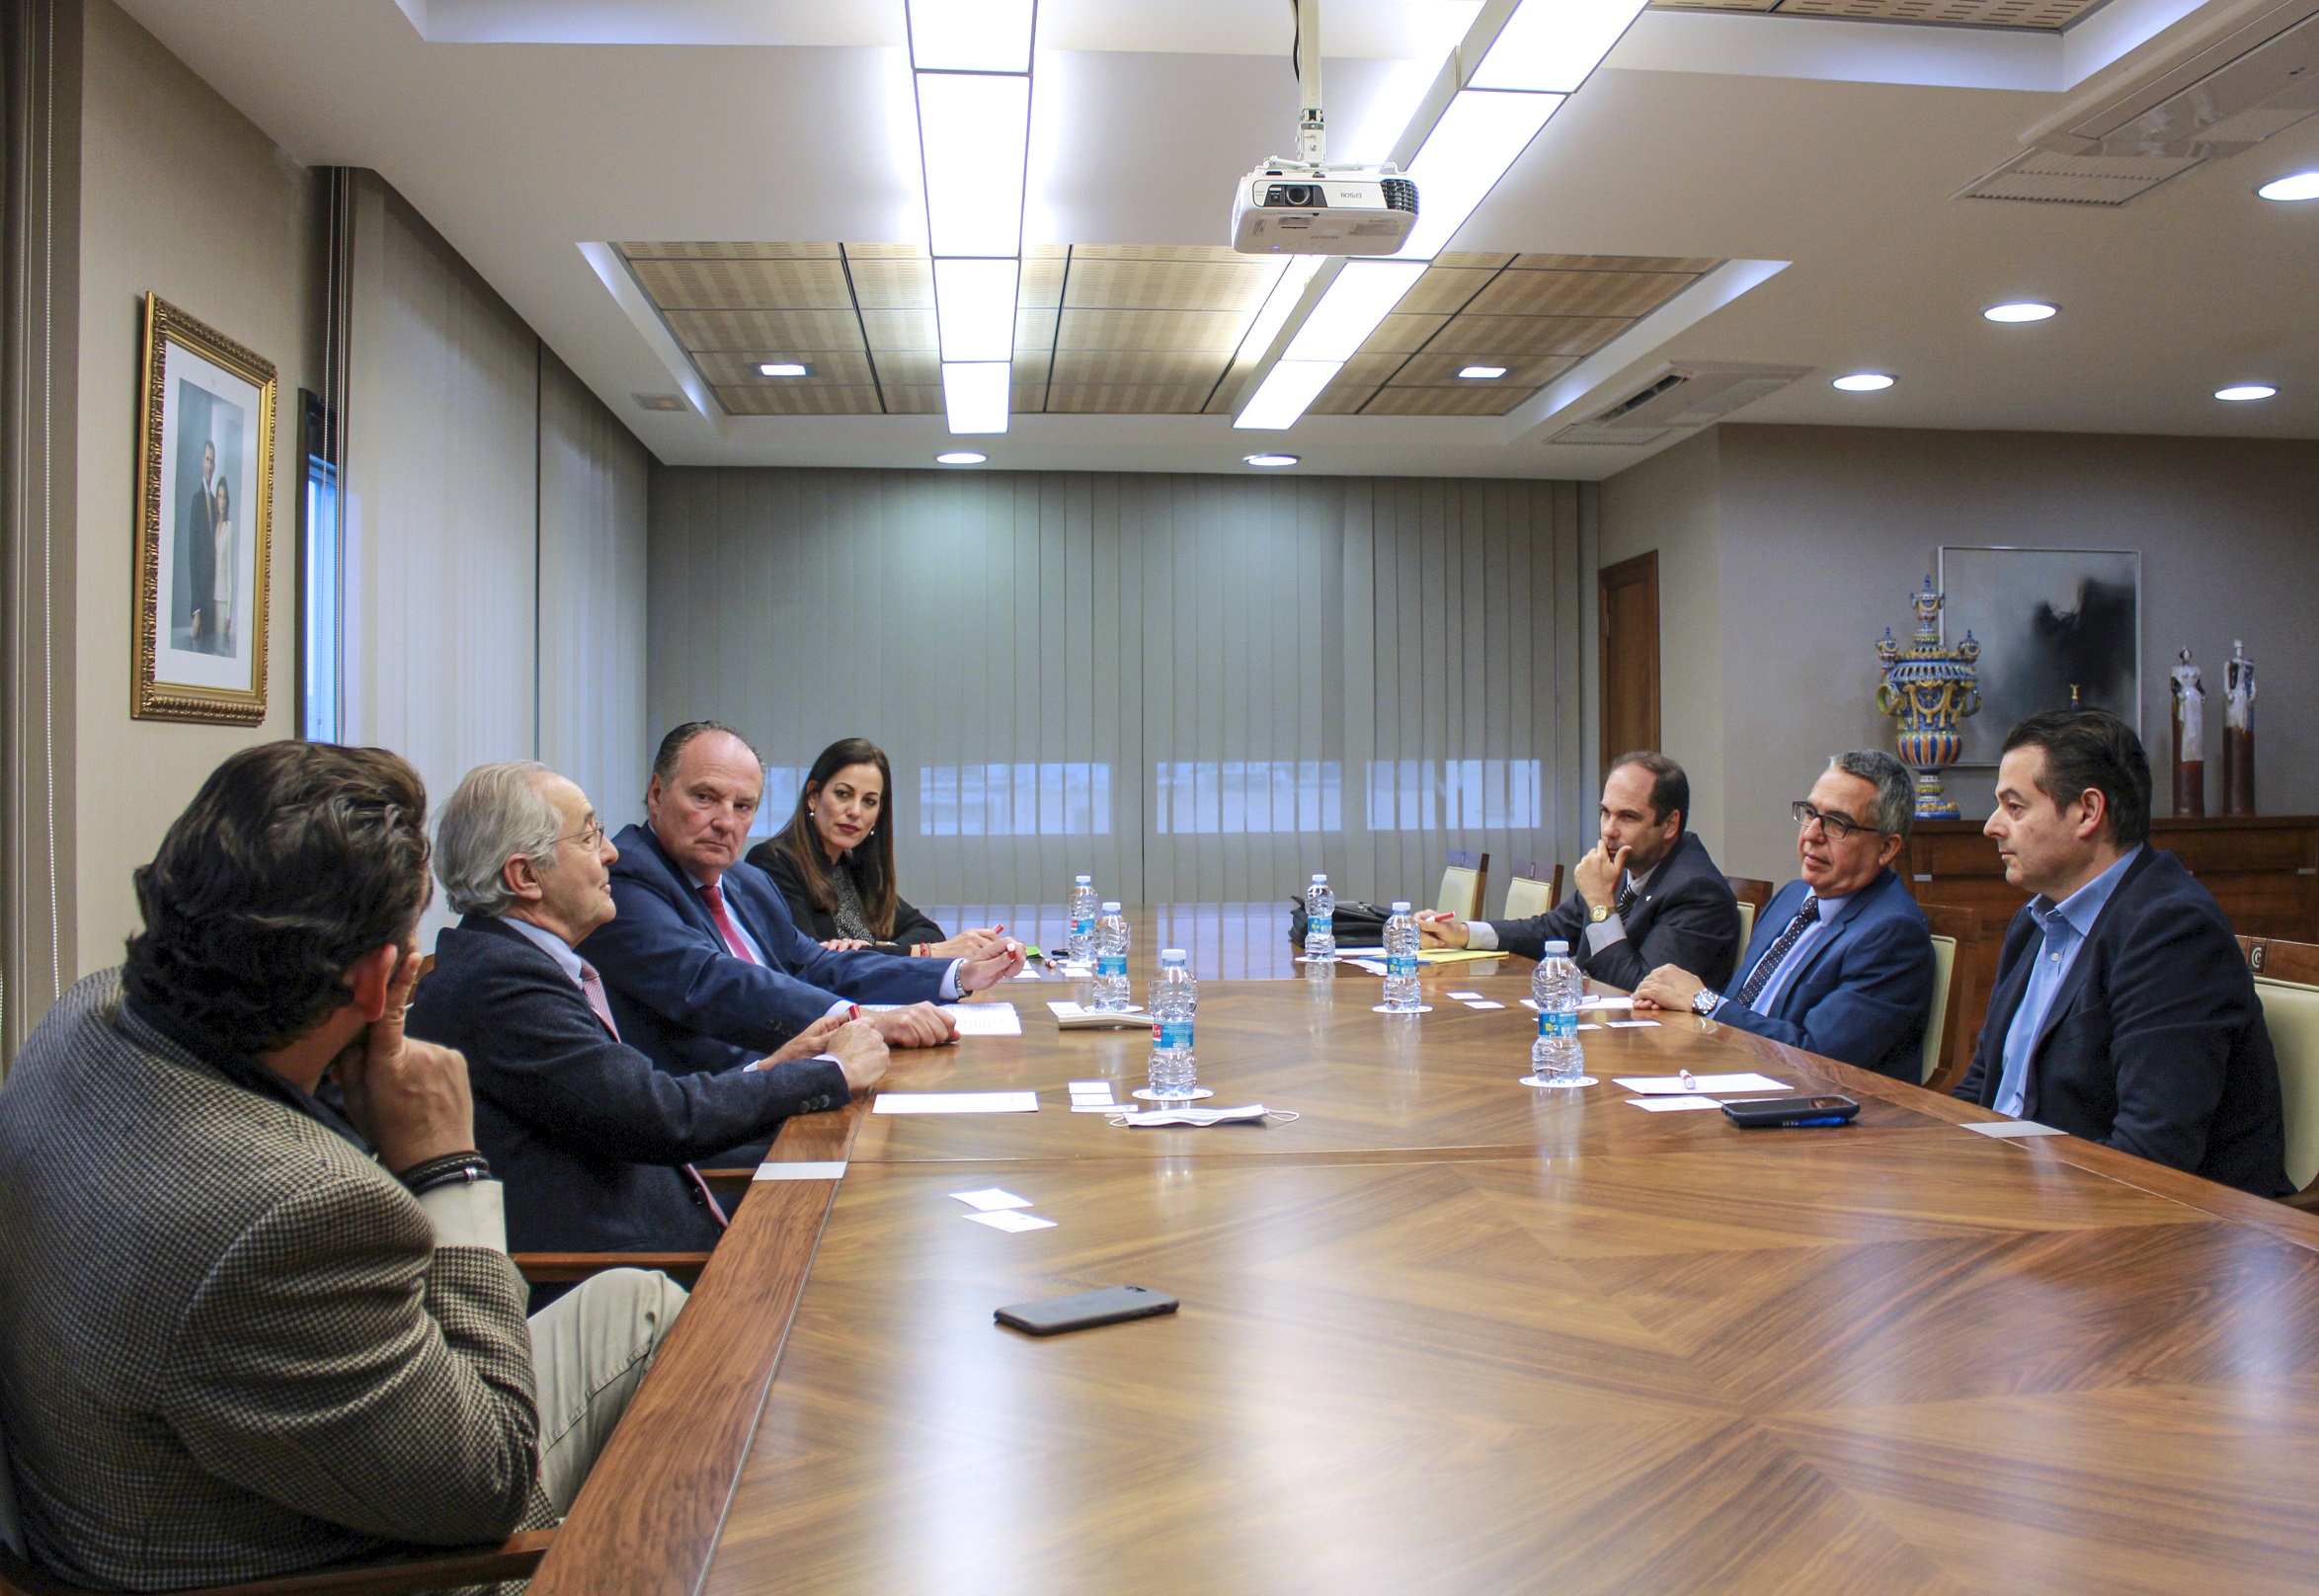 Fotonoticia: el embajador de Cuba visita Cámara Valencia